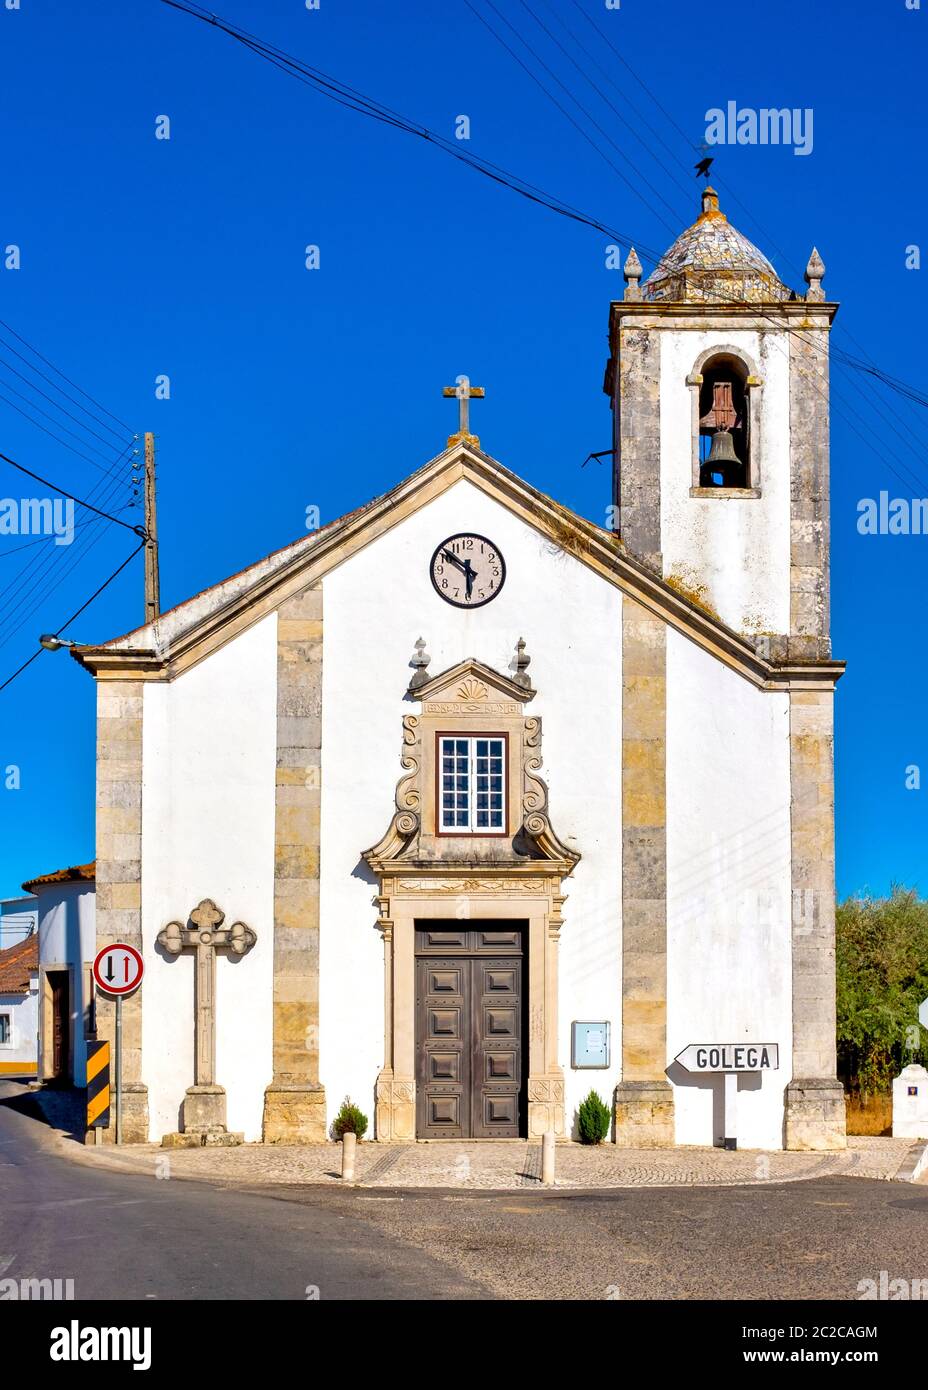 Igreja paroquial de Santa Cruz de Pombalinho, Pombalinhom, Portugal Foto de stock